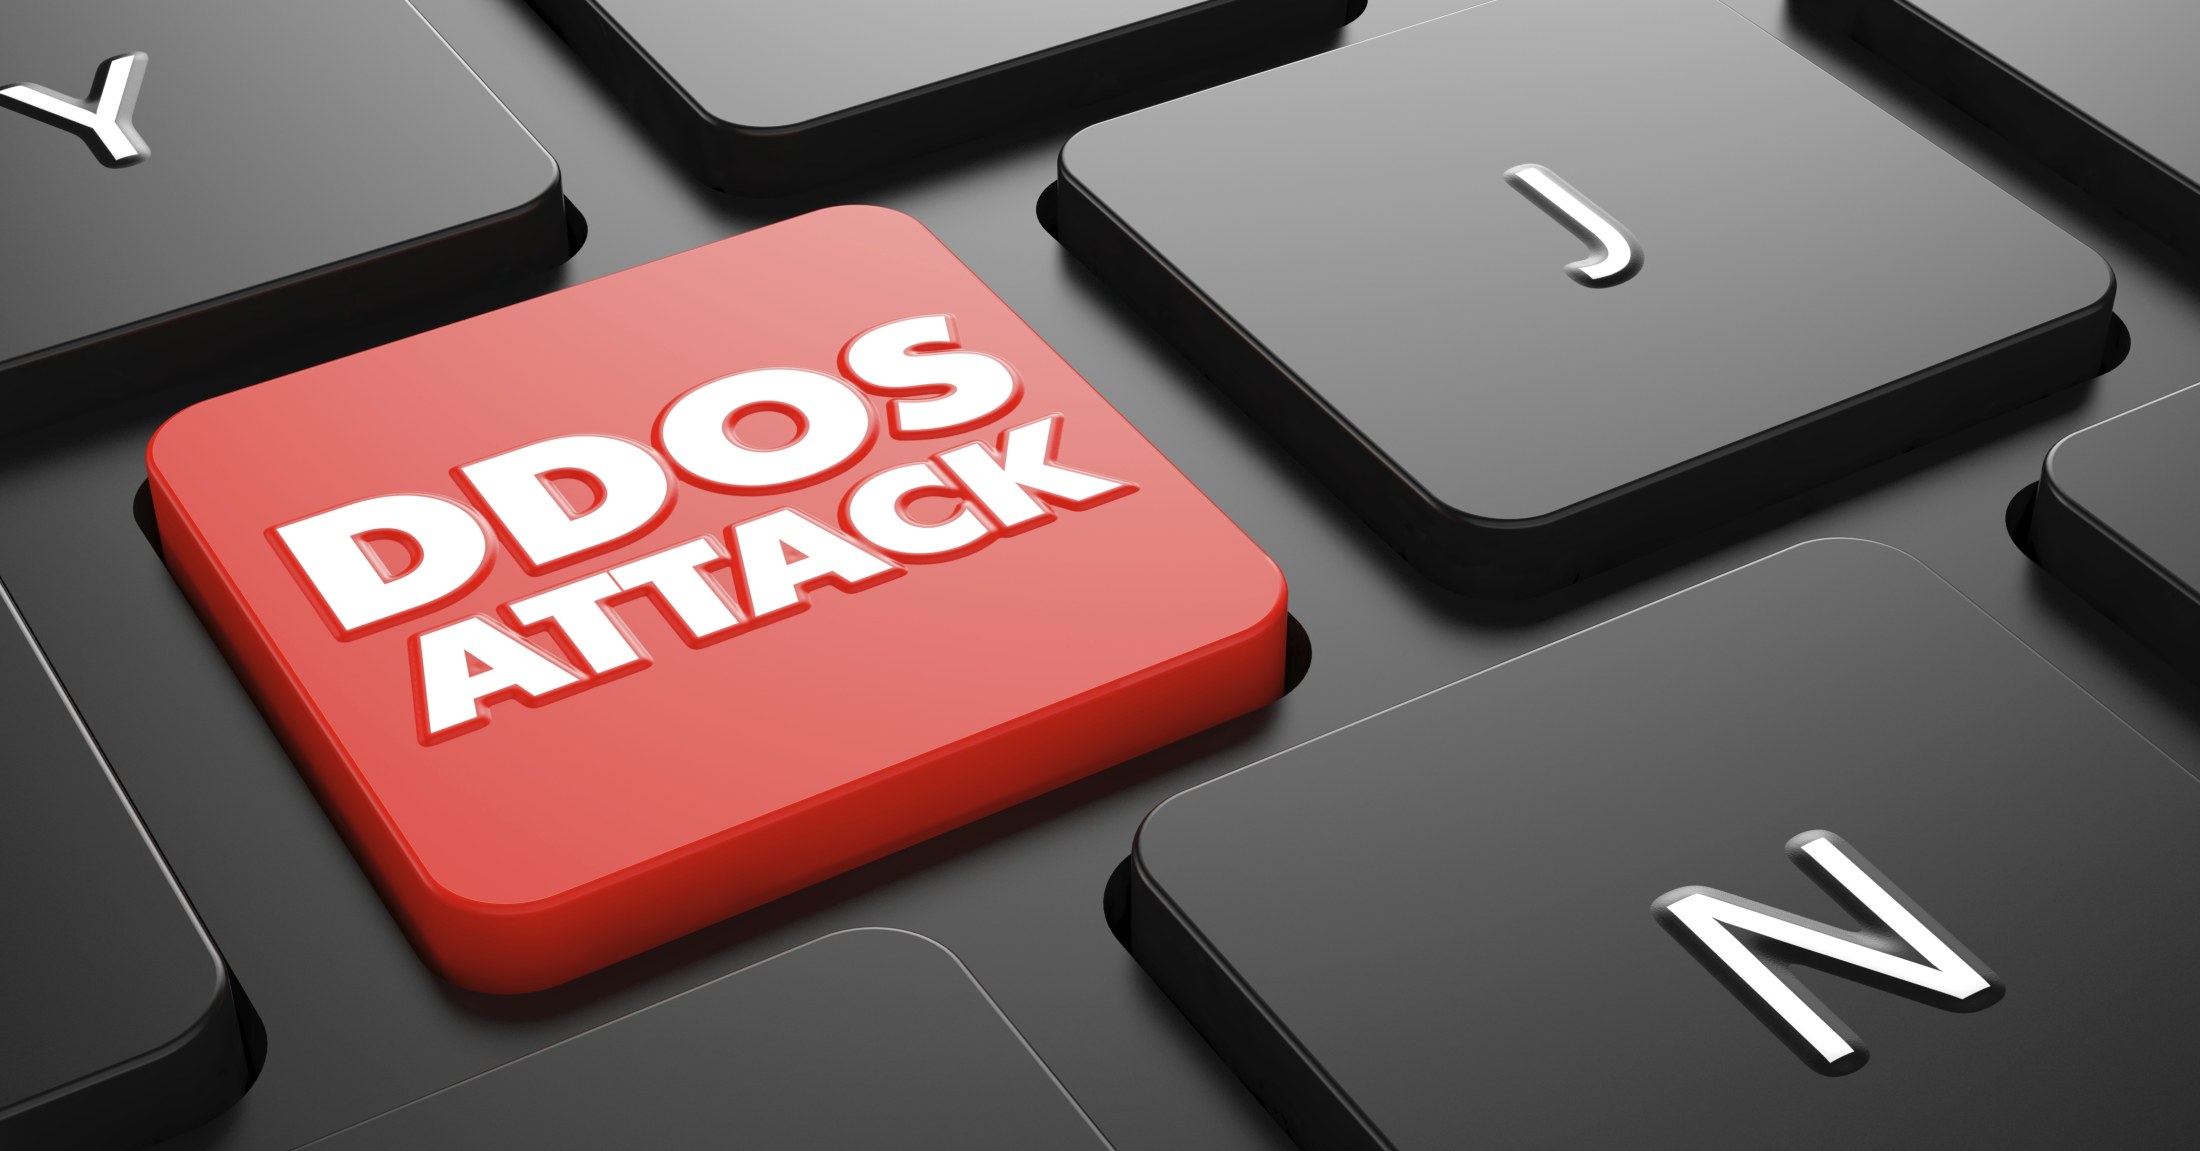 Вчера и позавчера ресурсы Сбербанка были атакованы не менее шести раз. Общая длительность этих DDoS-атак была не менее полутора часов.